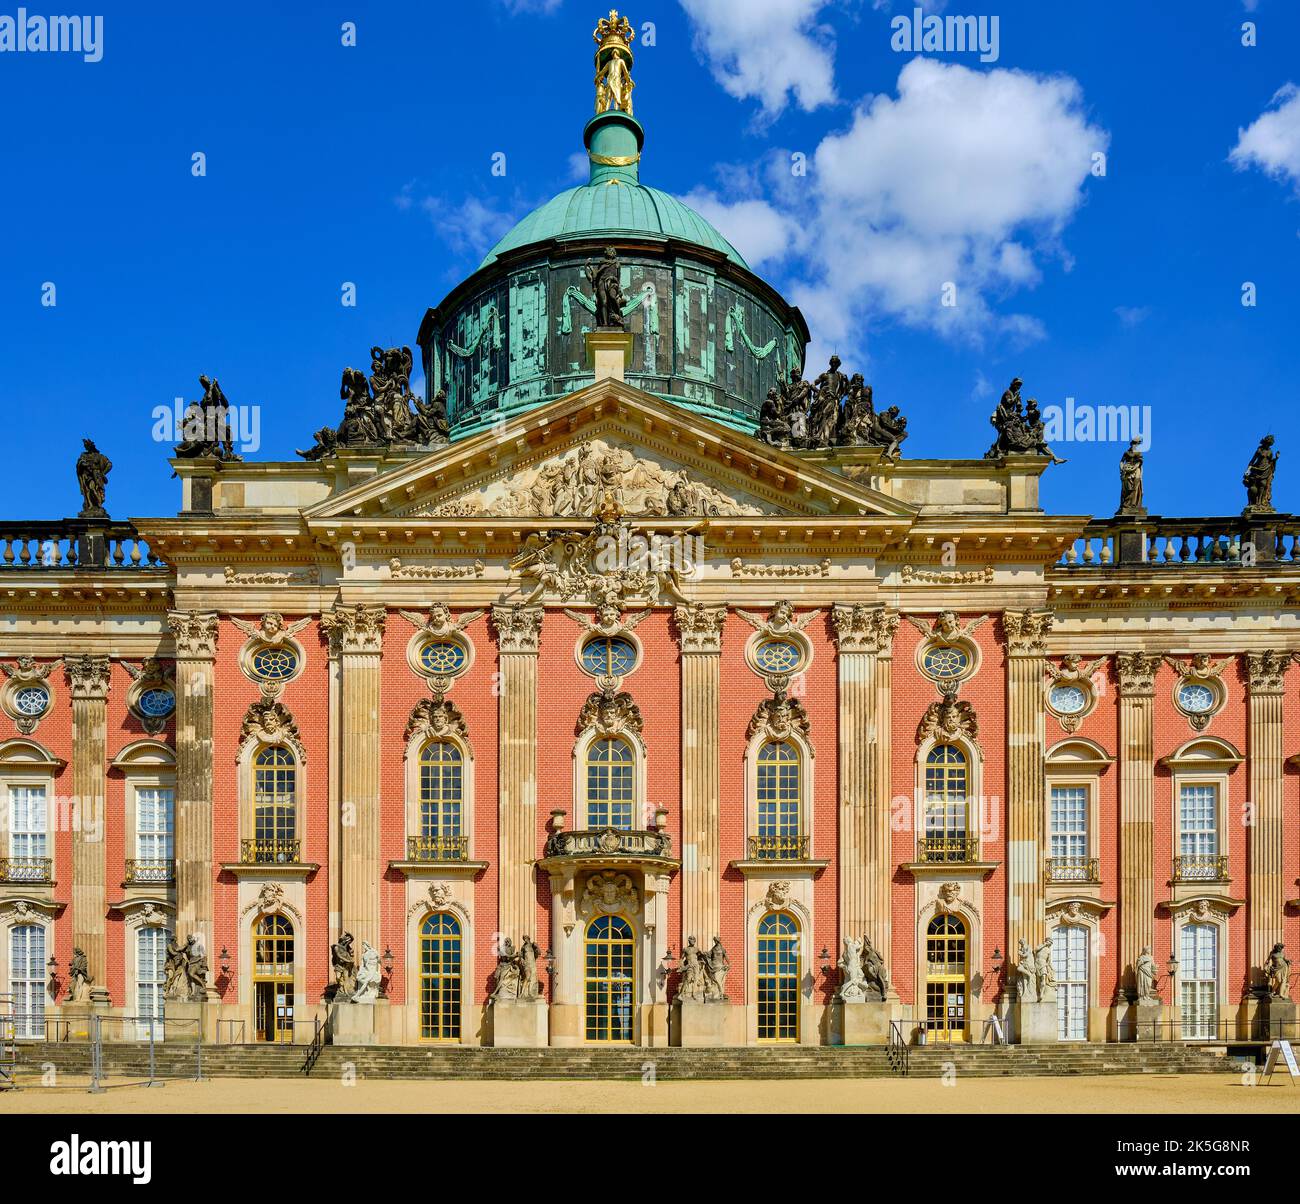 Das Neue Palais, ein preußisches Barockgebäude, besonders im Stil des Frederician Rococo, Sanssouci Park, Potsdam, Brandenburg, Deutschland. Stockfoto